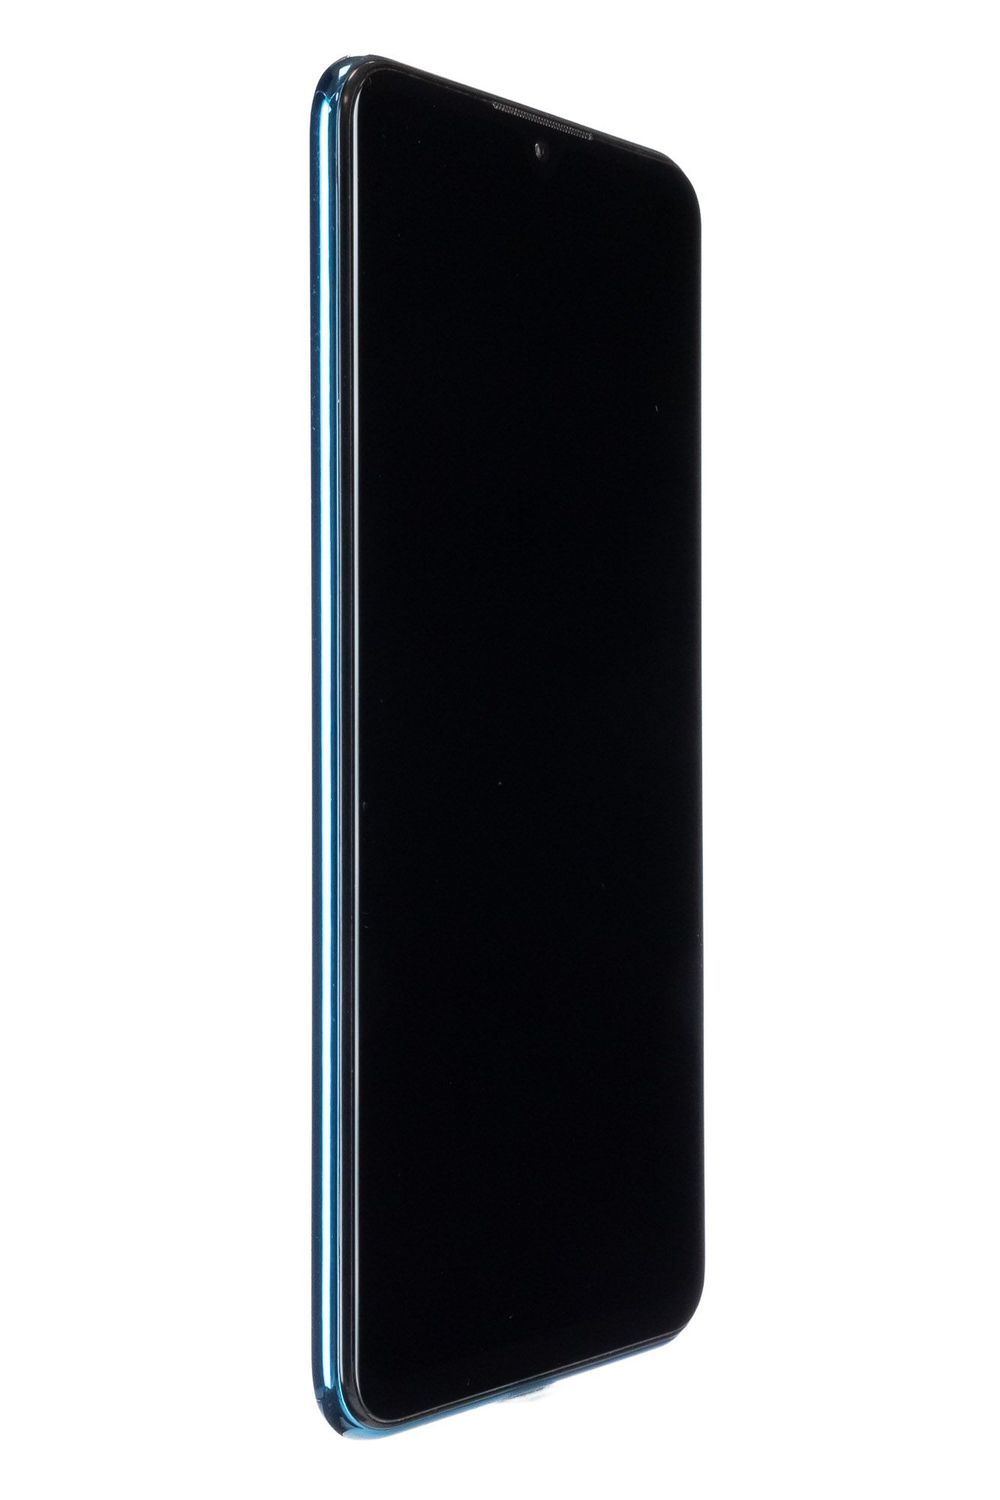 Κινητό τηλέφωνο Huawei P30 Lite Dual Sim, Peacock Blue, 64 GB, Foarte Bun